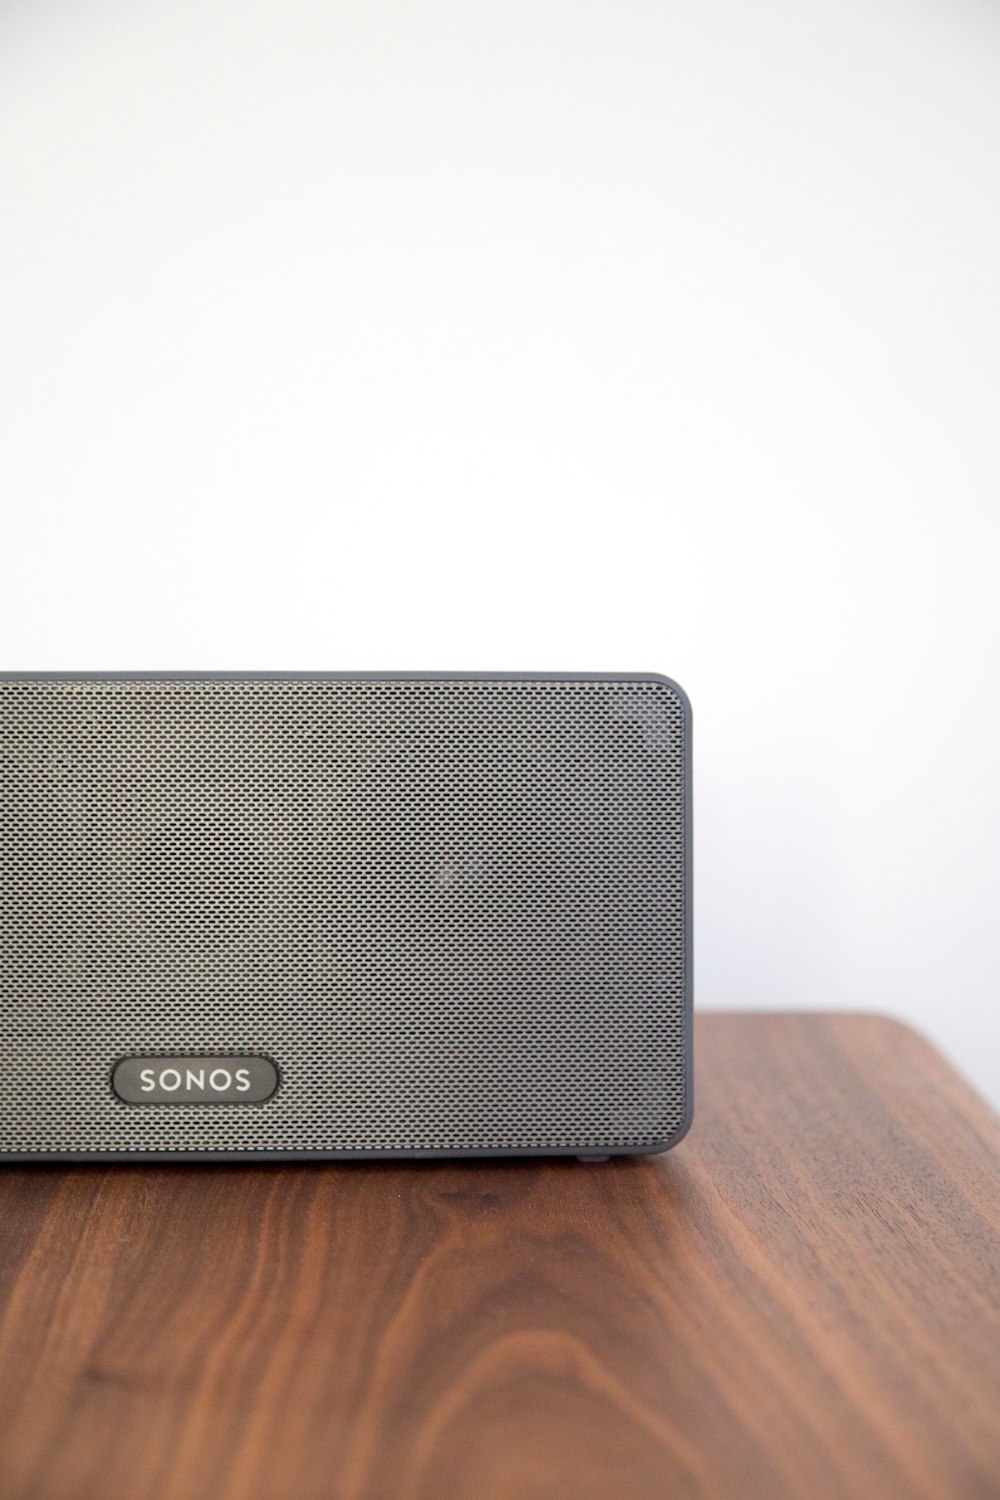 gray Sonos speaker on table